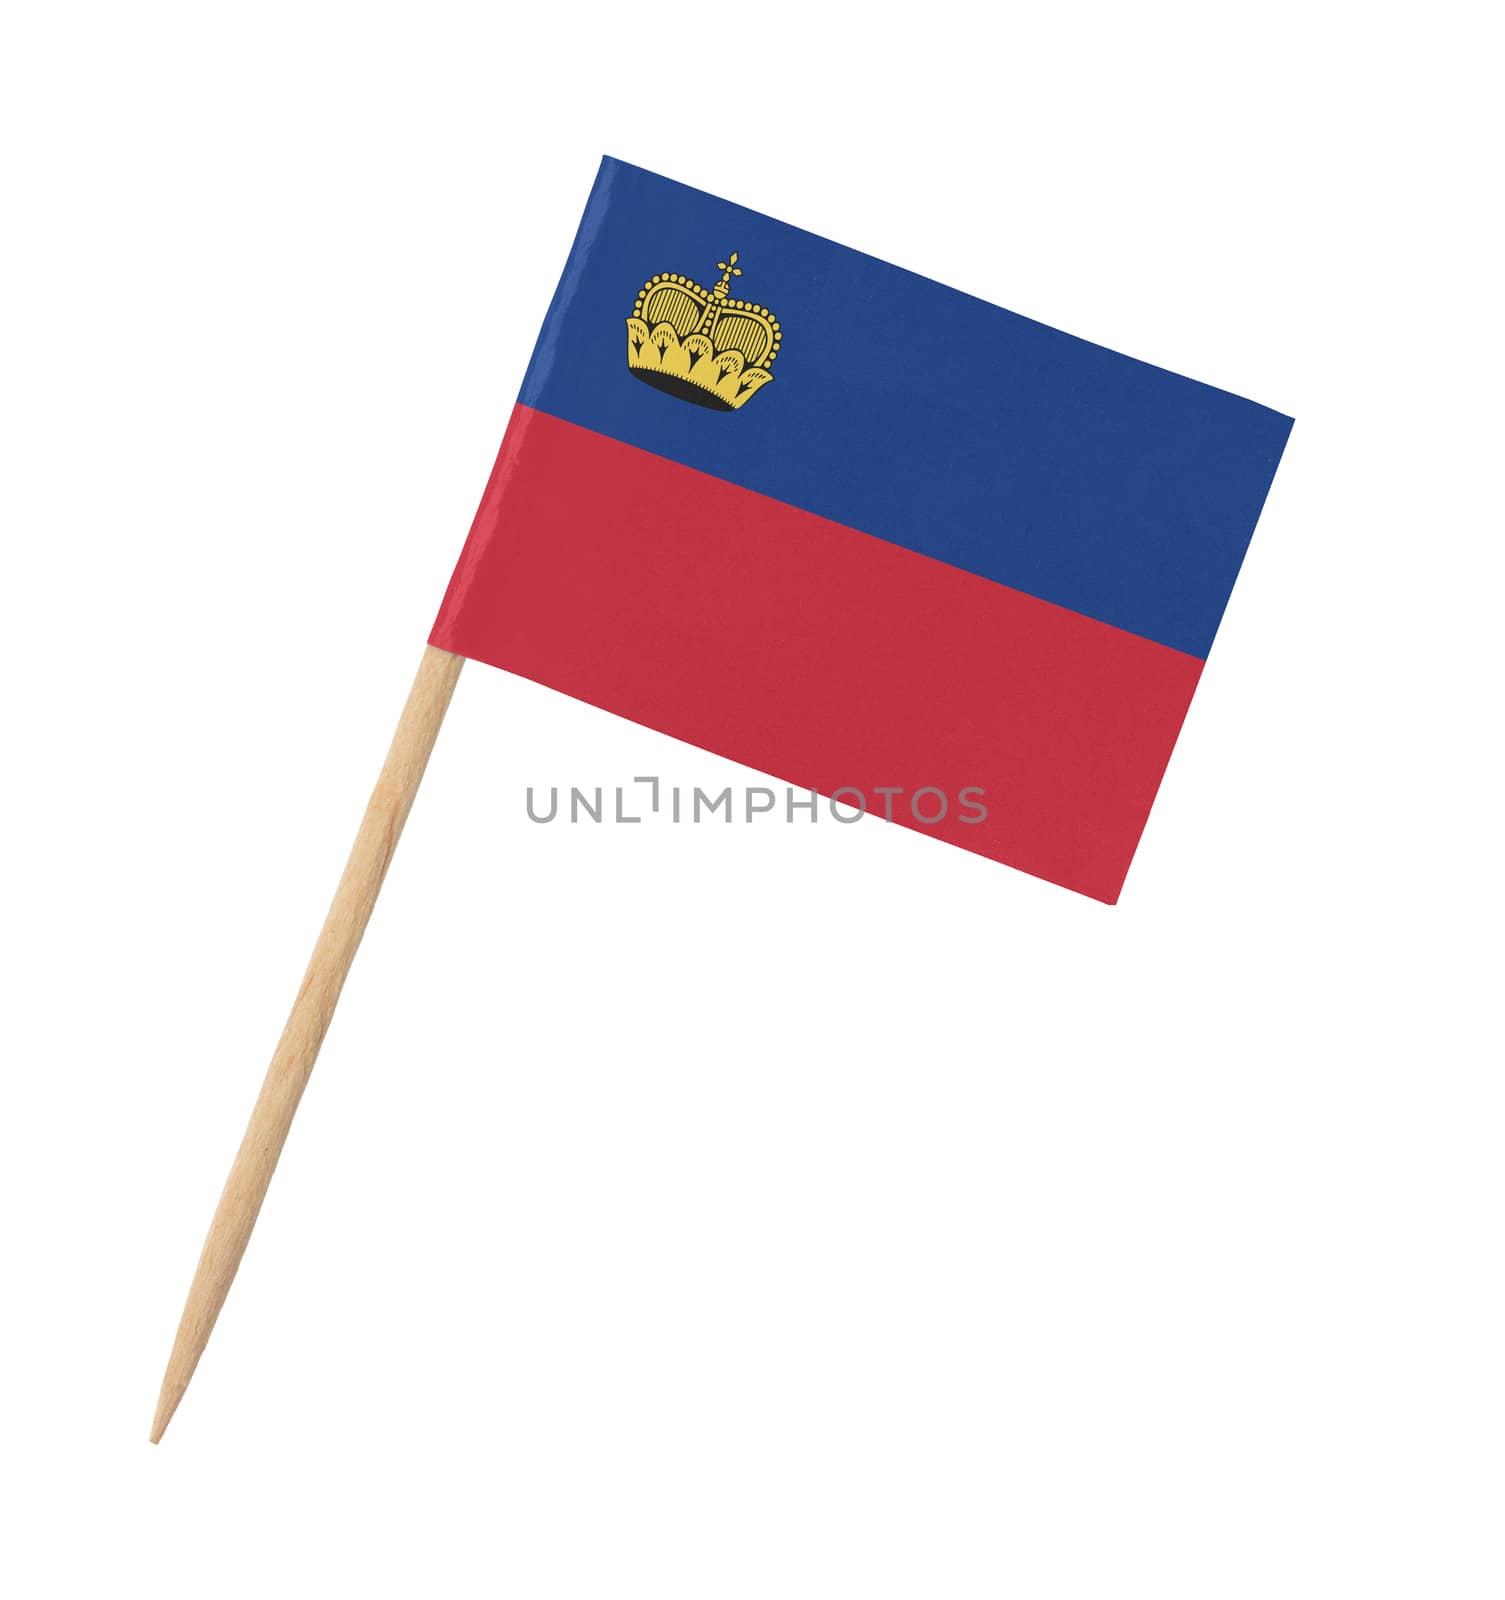 Small paper flag of Liechtenstein on wooden stick by michaklootwijk